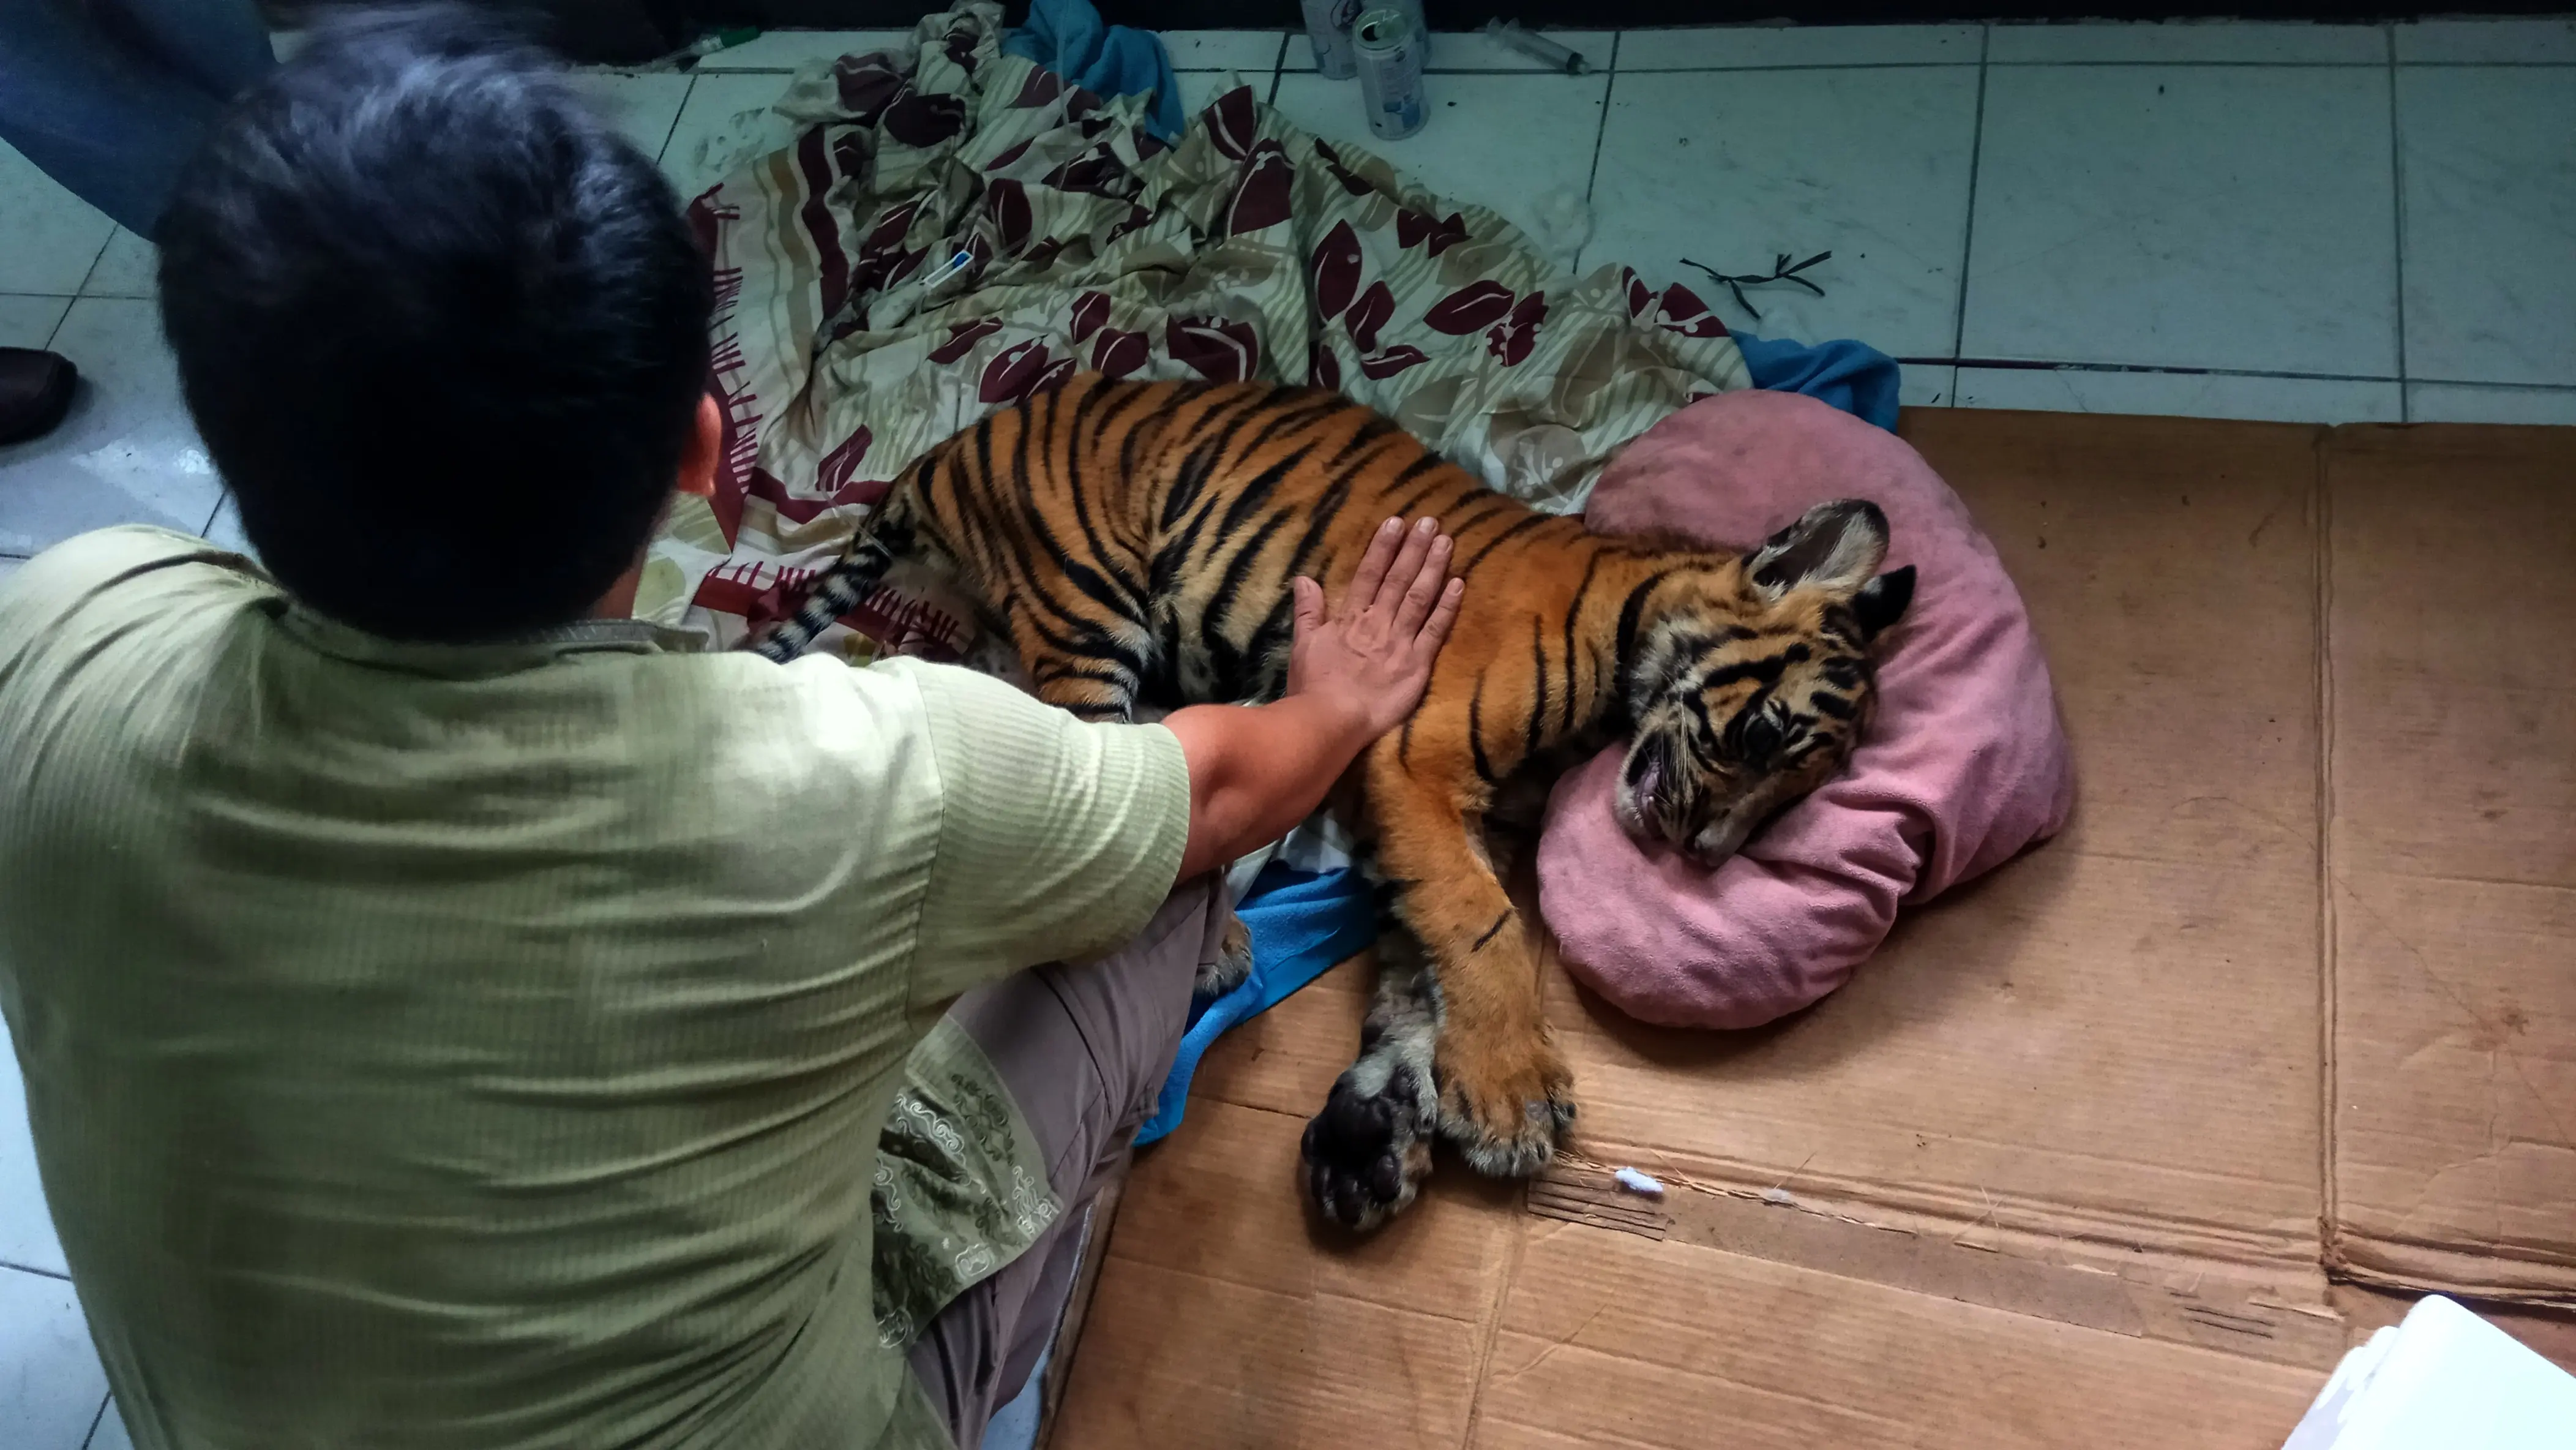 Anak Harimau Sumatera yang ditemukan warga Bengkalis, Riau, di kebun karet, akhirnya mati setelah dirawat hampir 12 jam oleh petugas. (Liputan6.com/M Syukur)